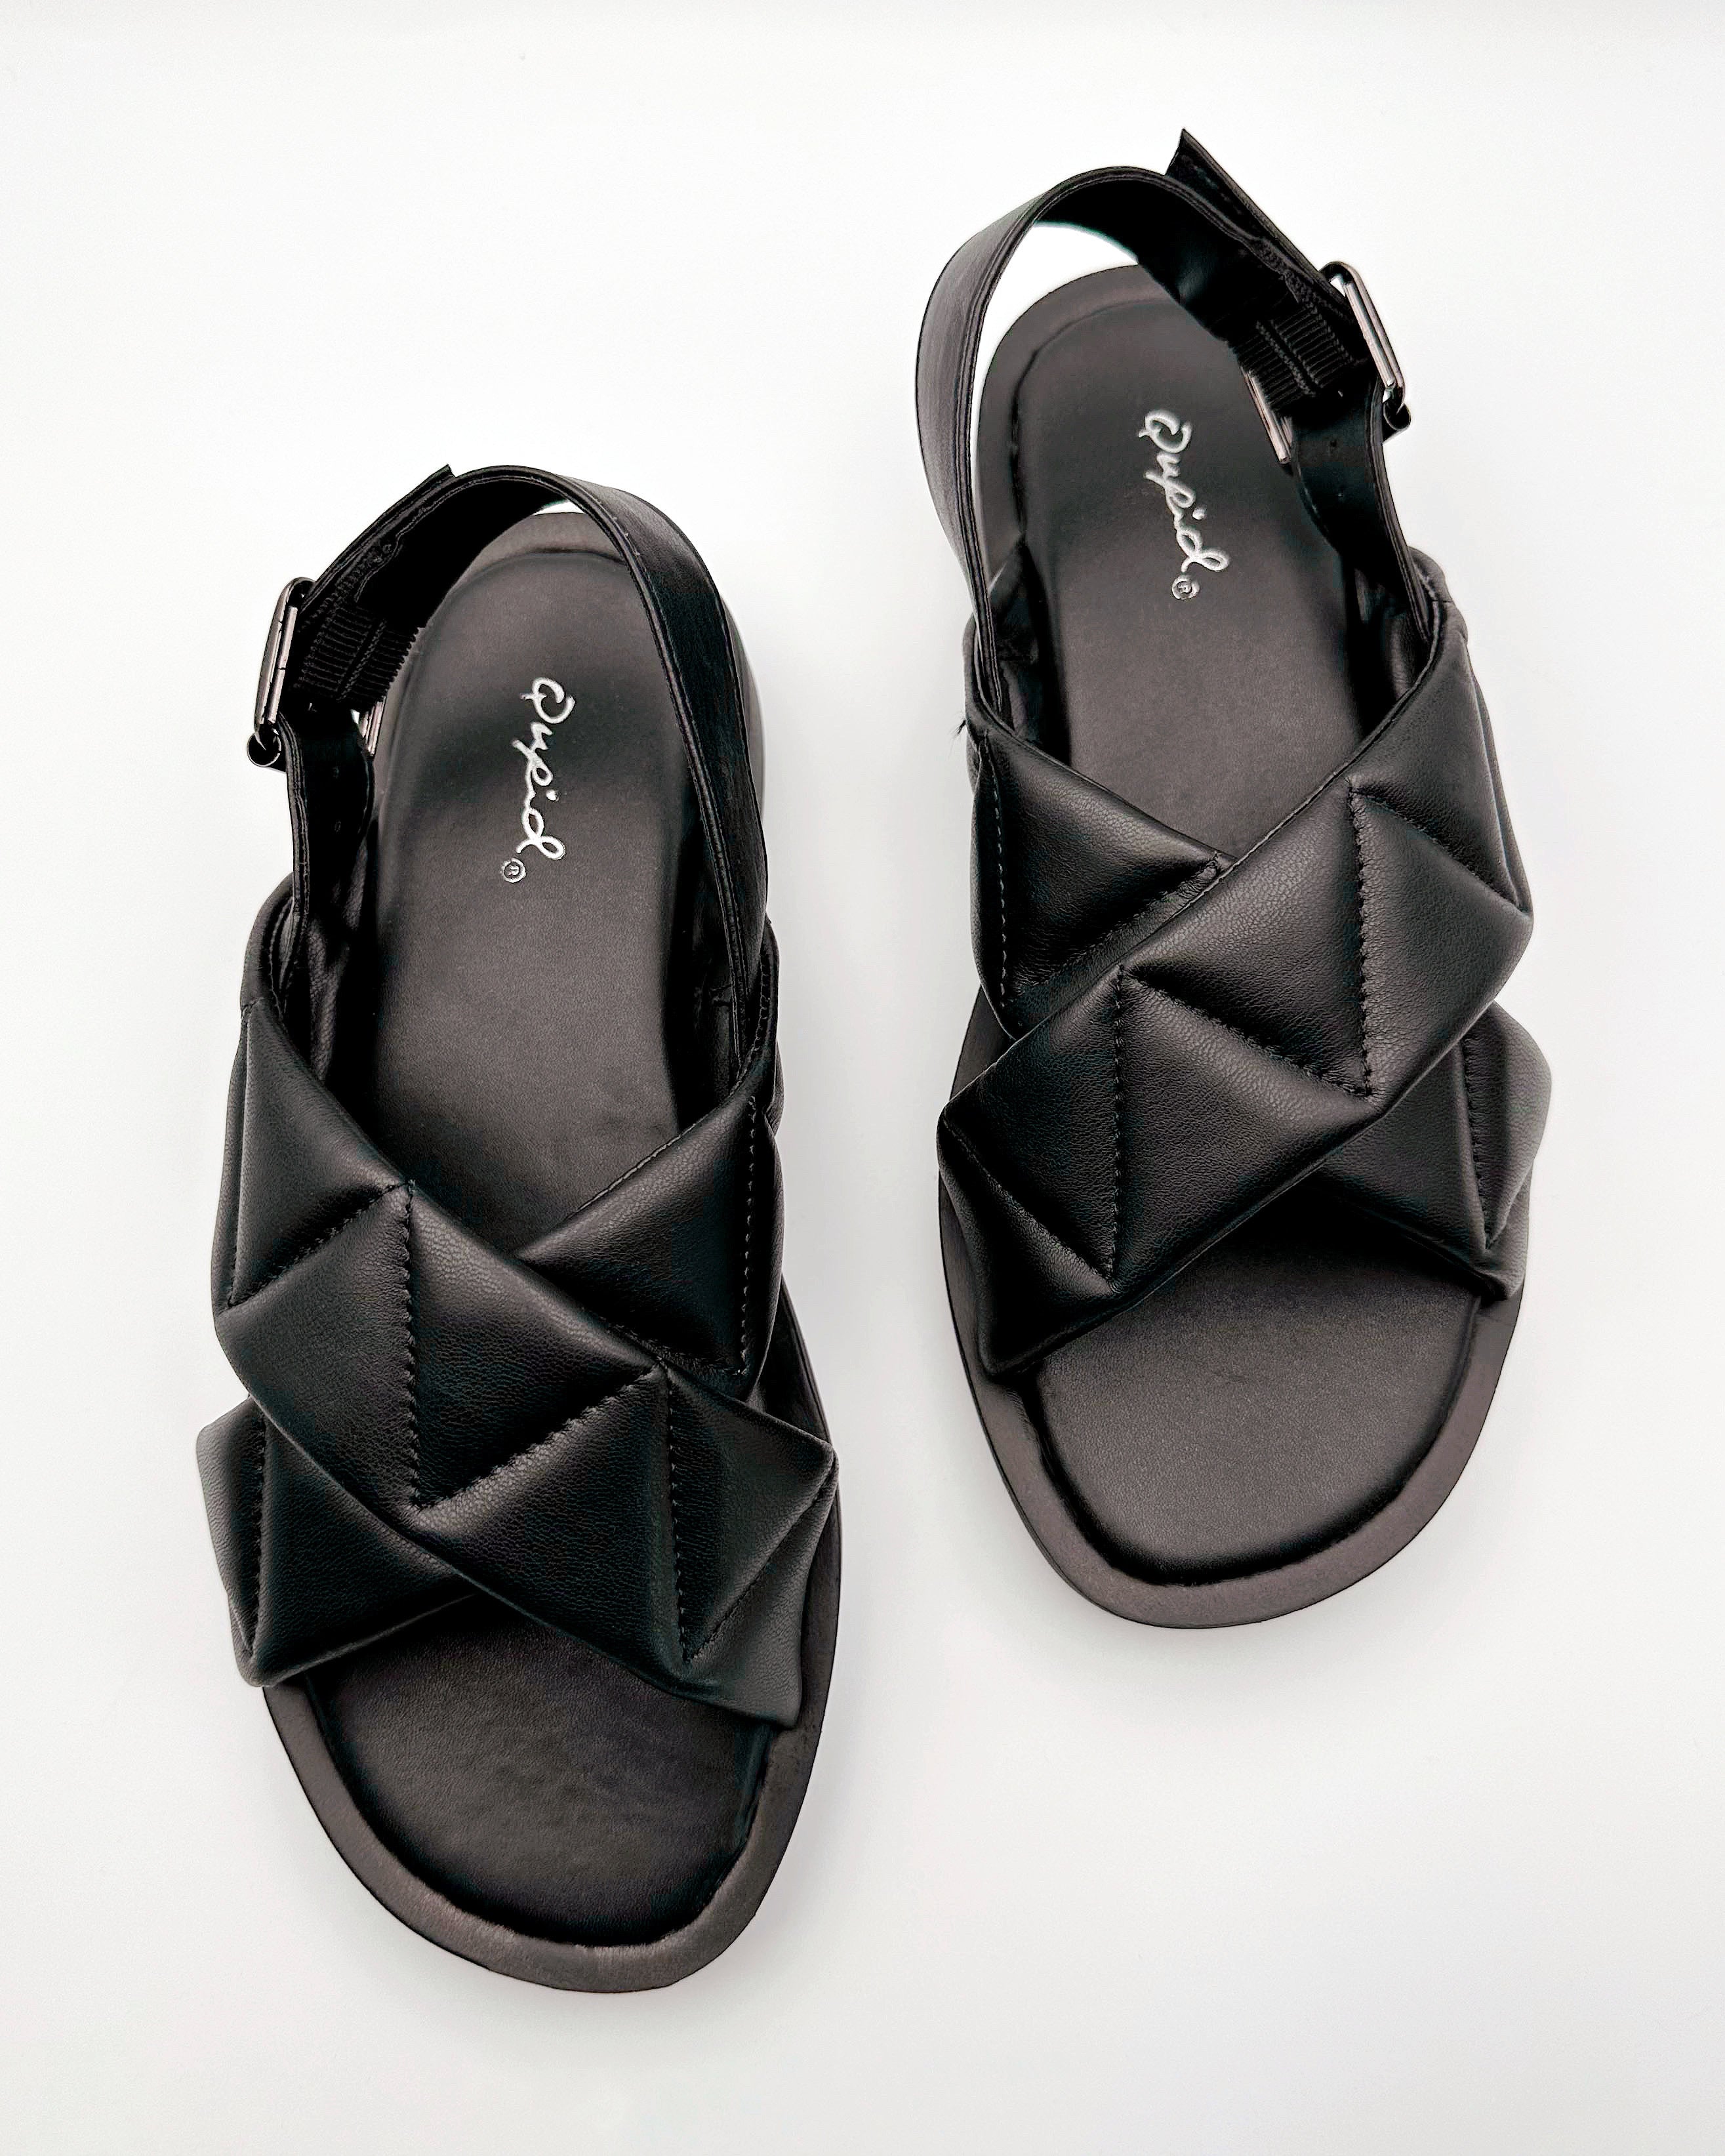 Cal Black Ankle Strap Sandals - Blackbird Boutique